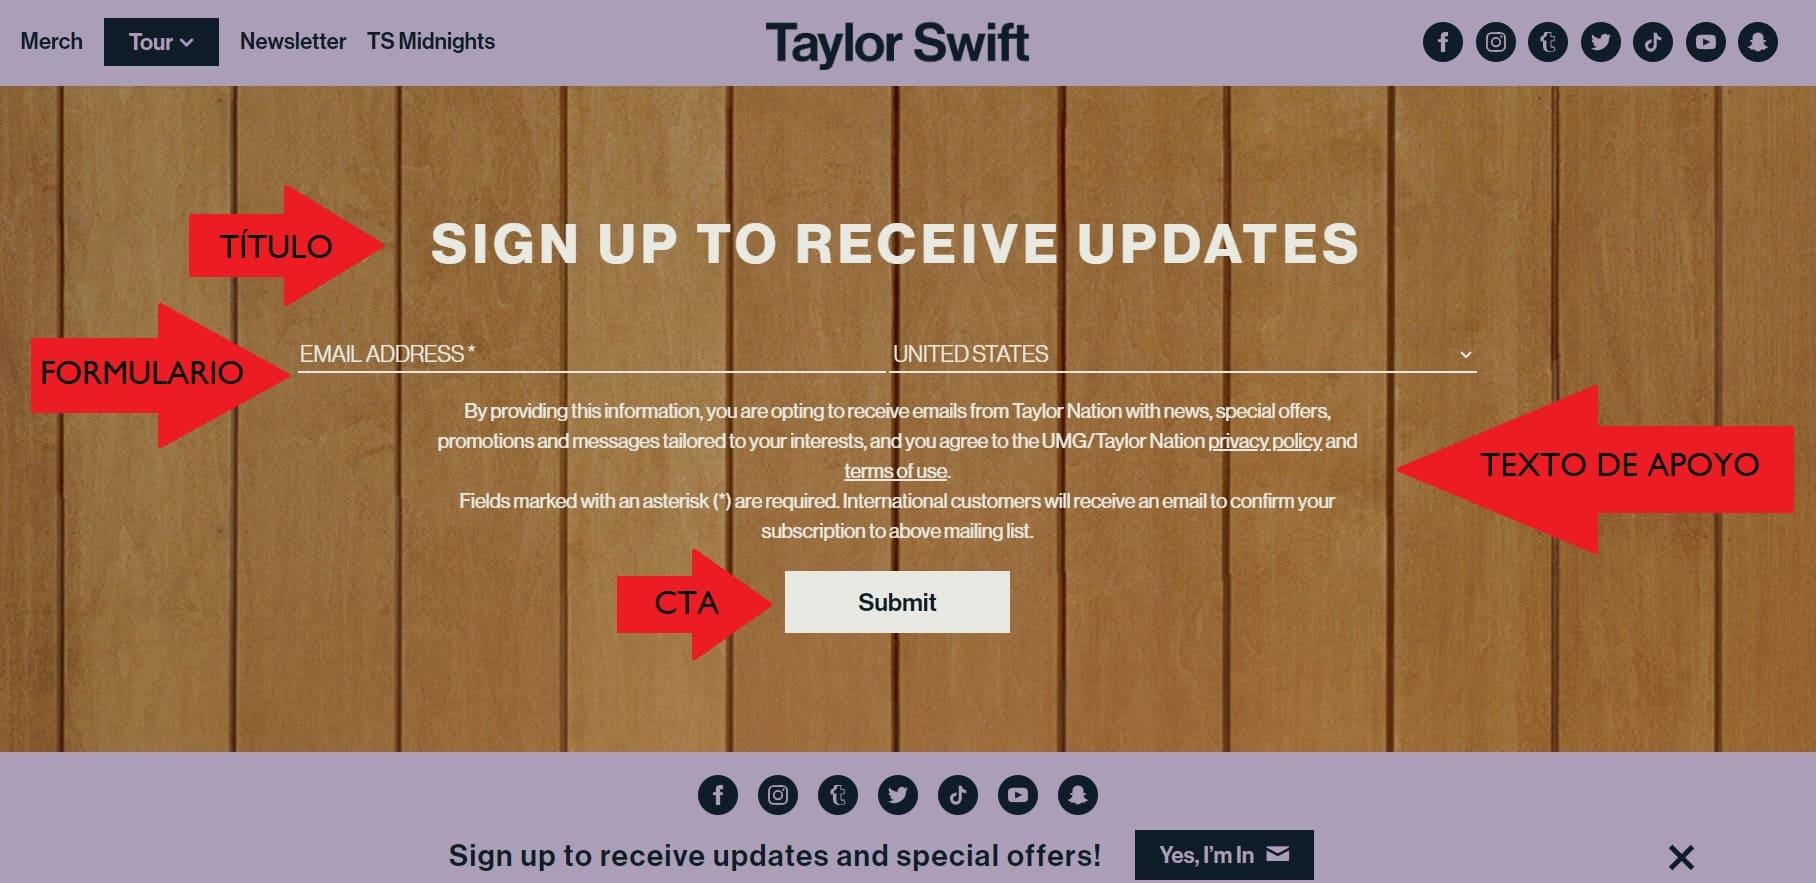 Captura de pantalla de la squeeze page en el sitio de la cantante Taylor Swift